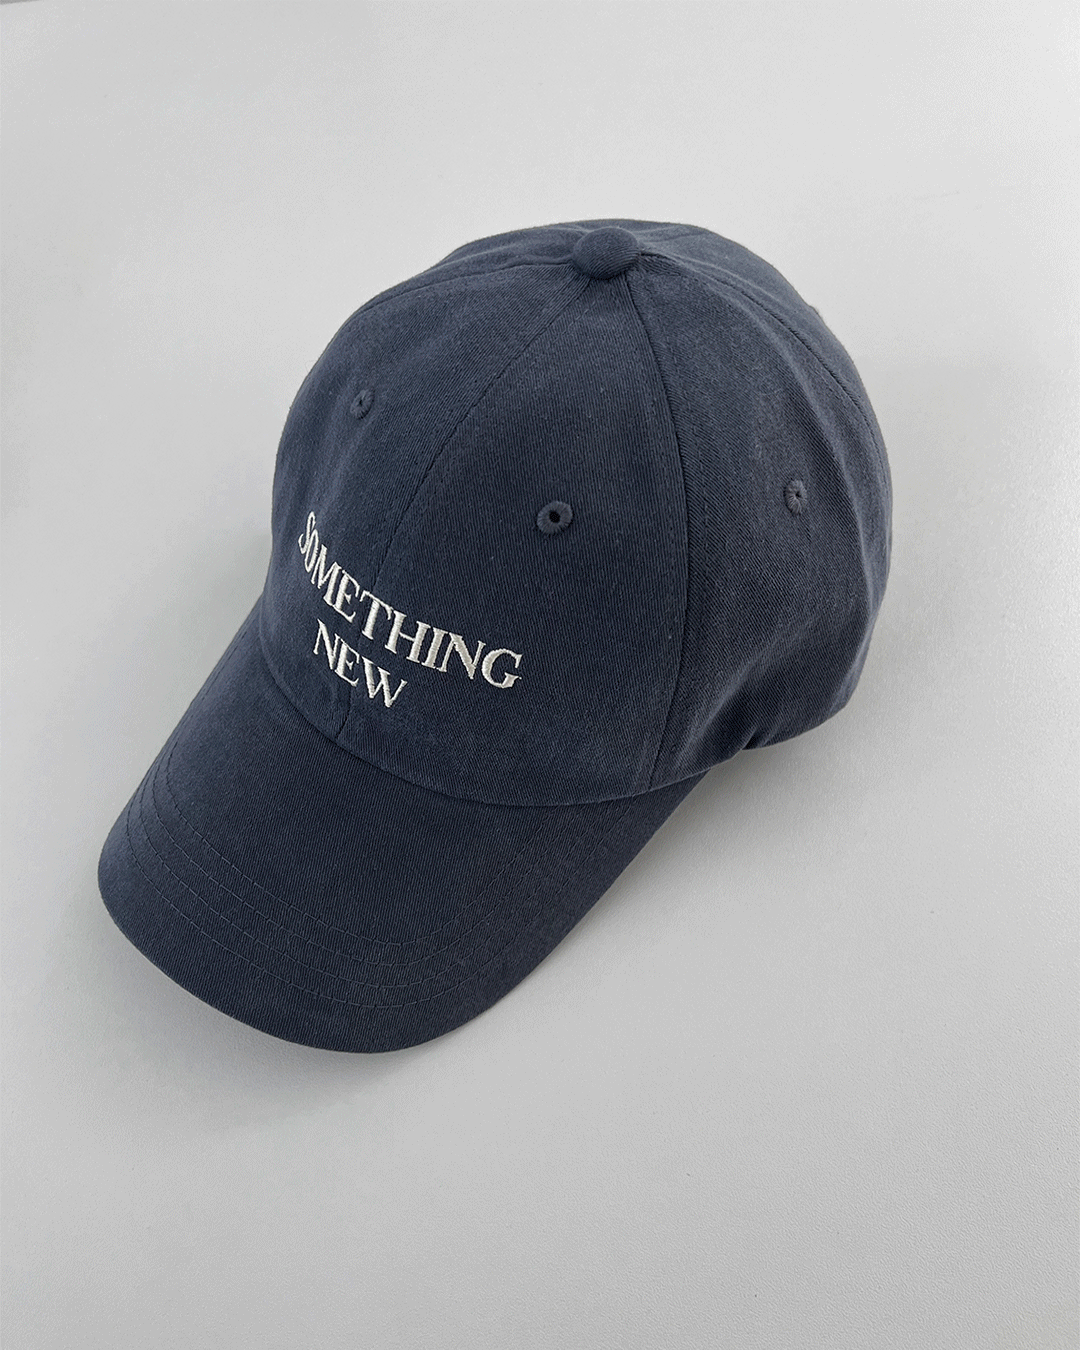 Something cap